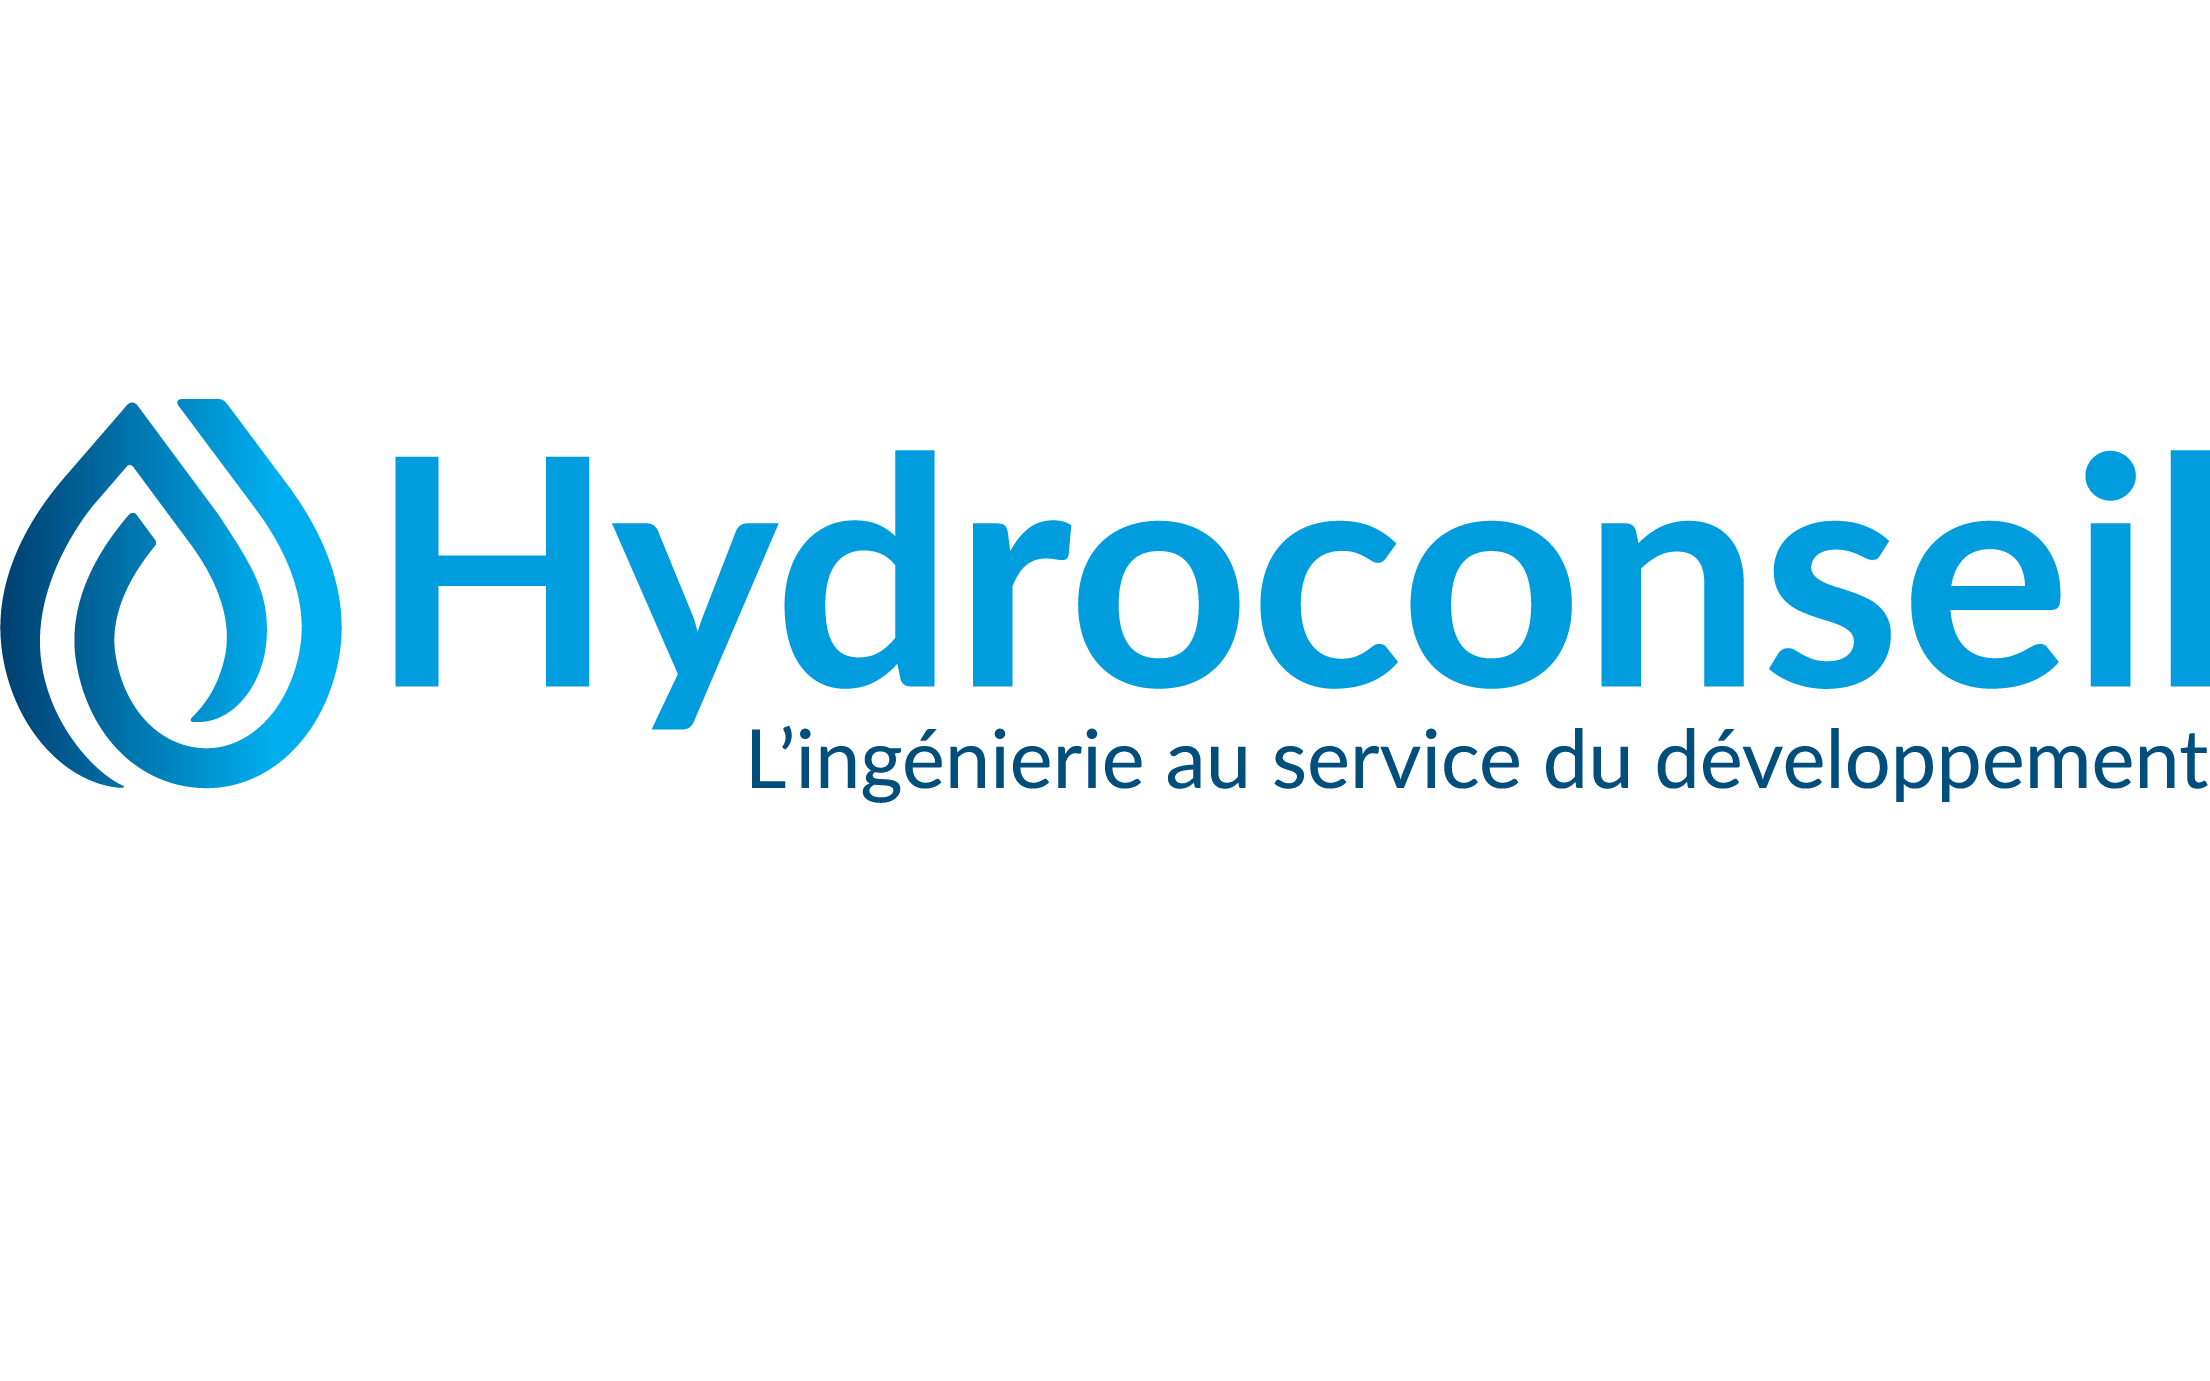 Hydroconseil recrute un(e) Responsable chargé(e) de projets accès à l’énergie, Paris, France